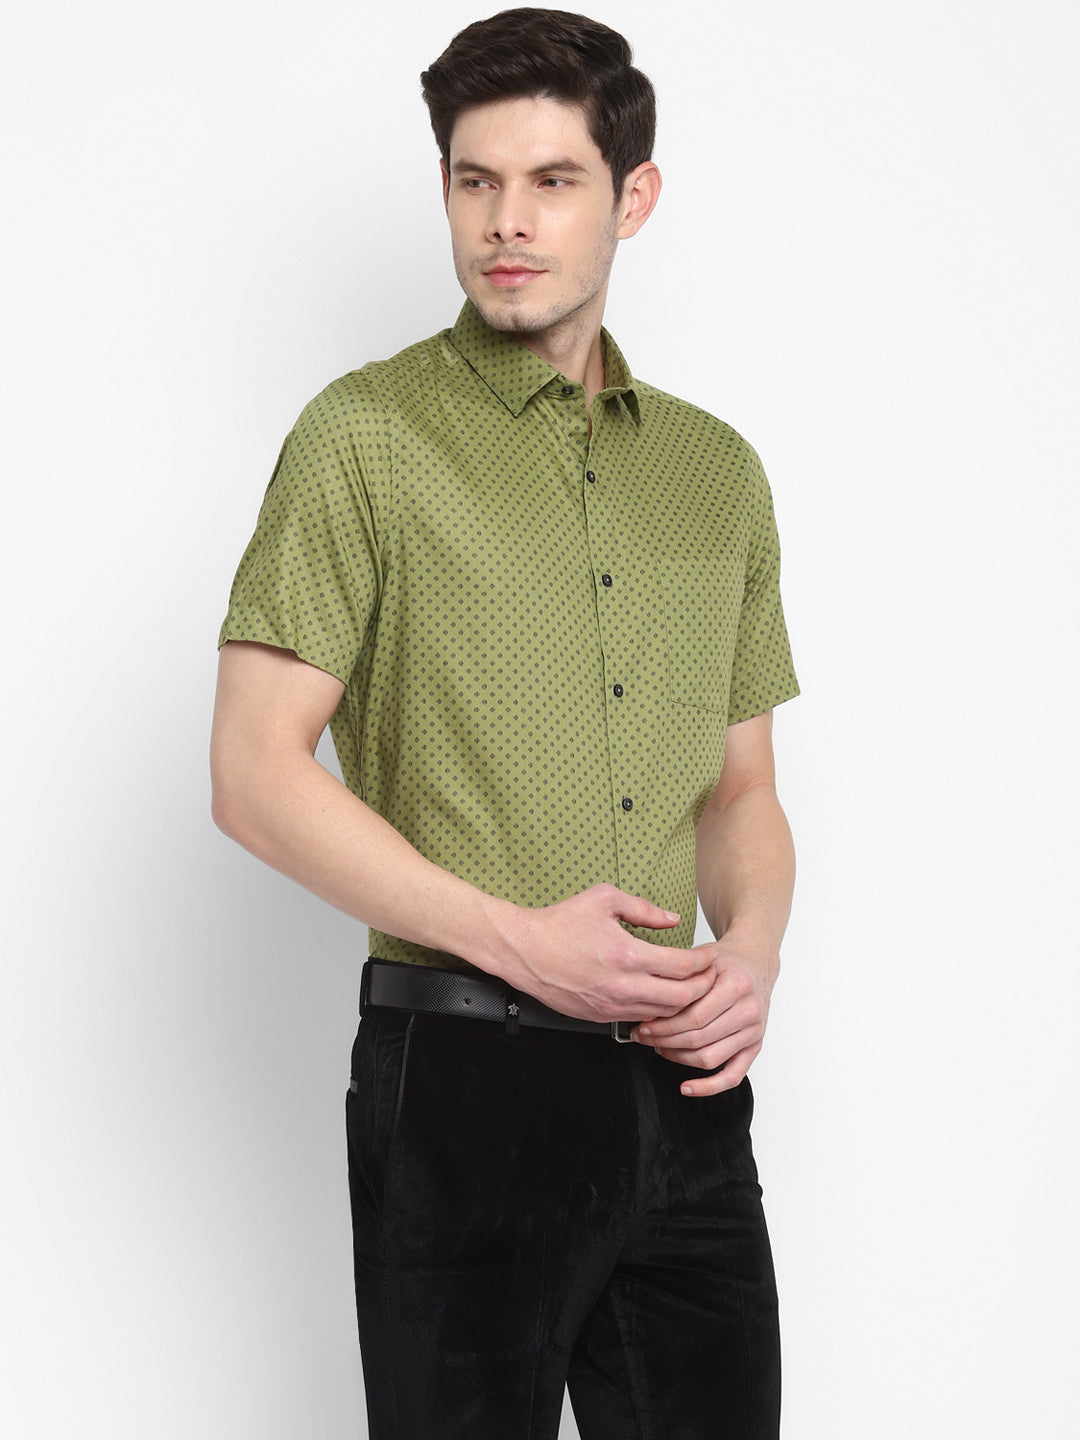 Printed Green Regular Fit Formal Shirt